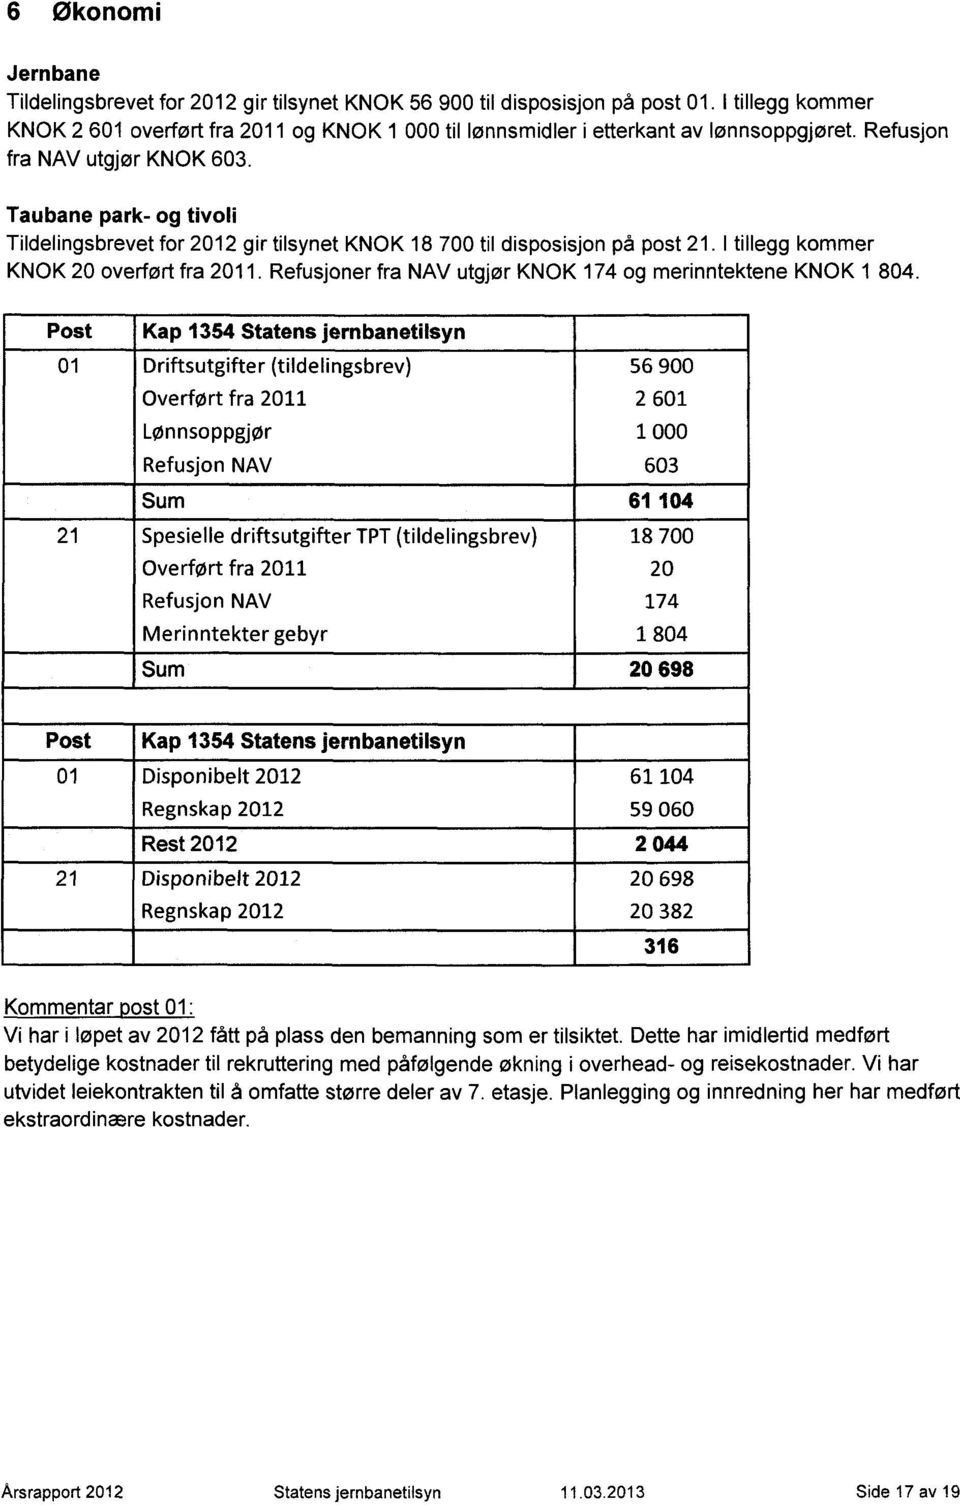 Taubane park- og tivoli Tildelingsbrevet for 2012 gir tilsynet KNOK 18 700 til disposisjon på post 21. I tillegg kommer KNOK 20 overført fra 2011.